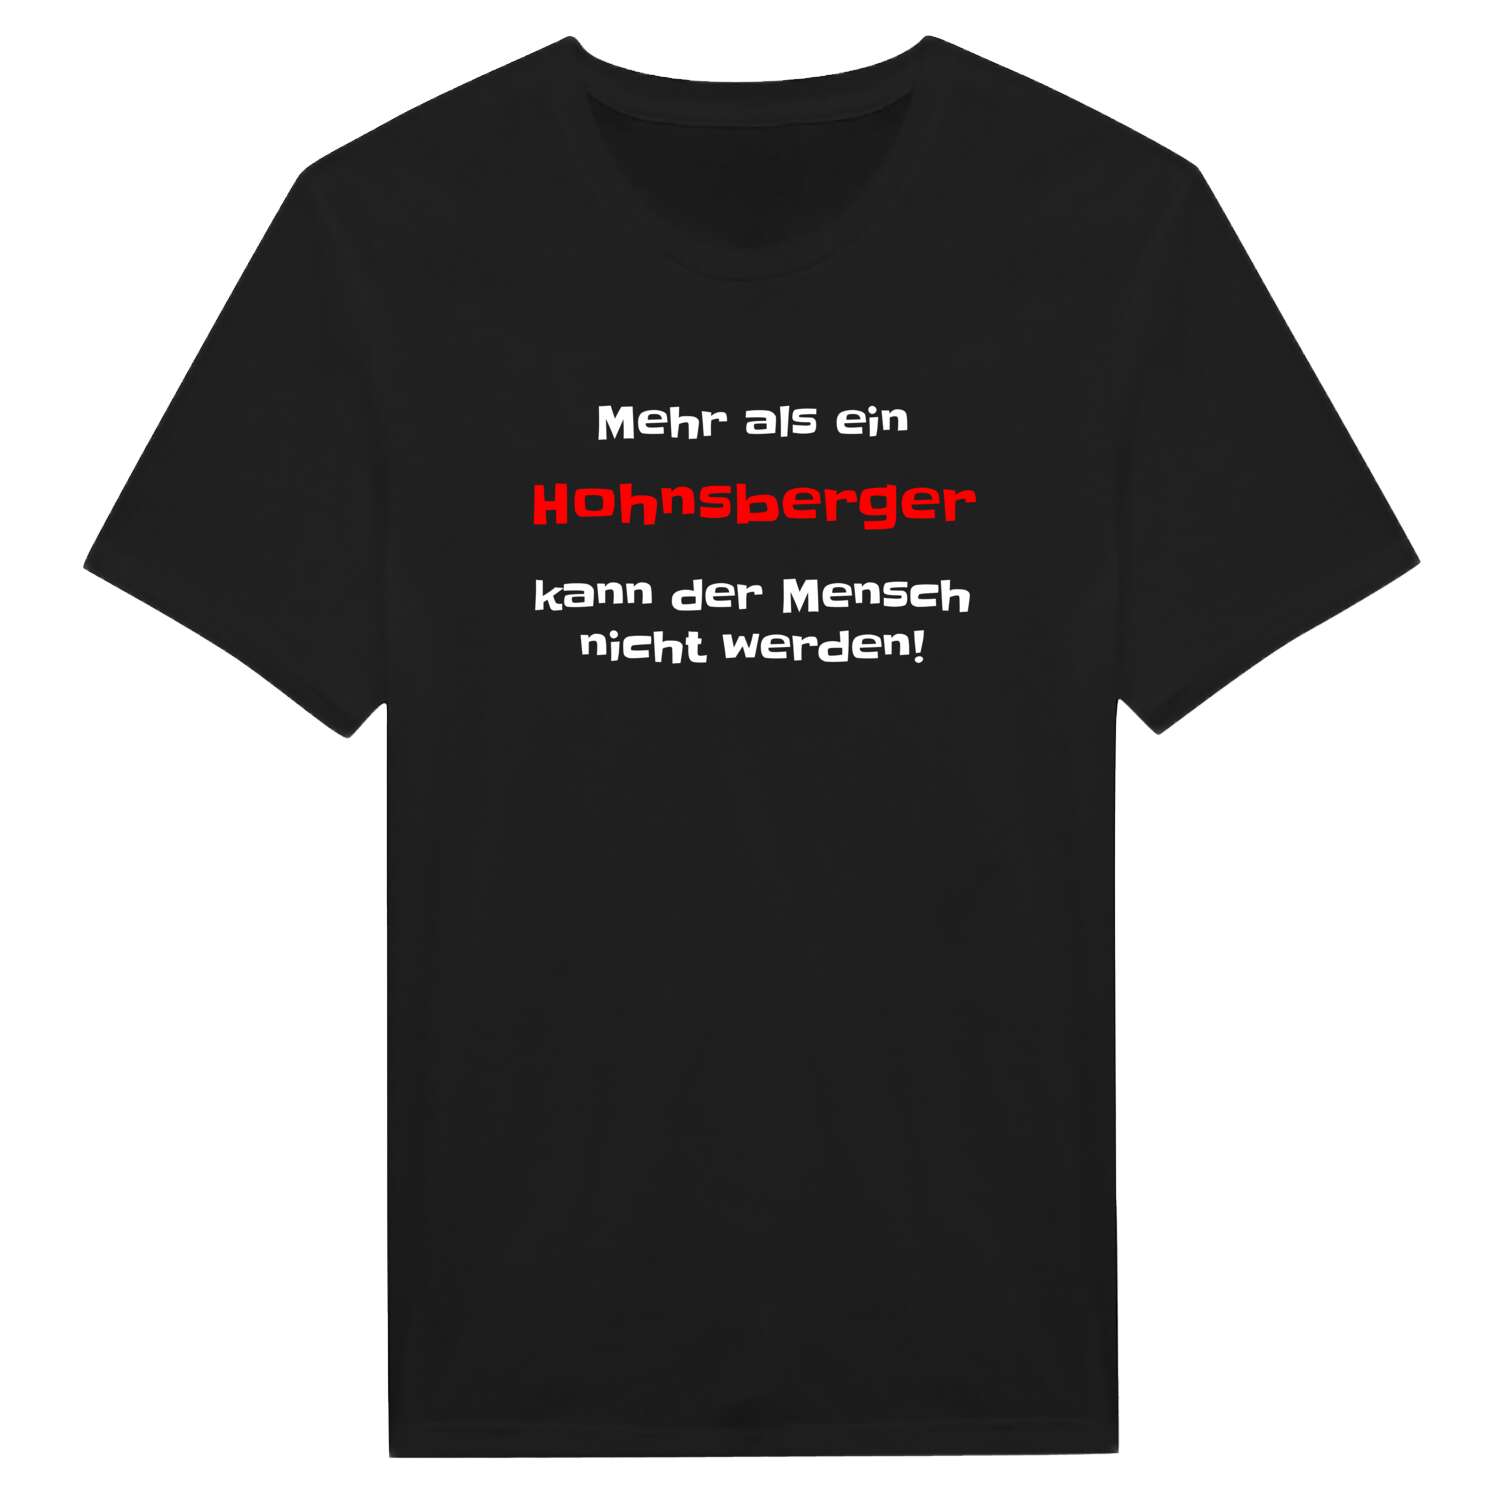 Hohnsberg T-Shirt »Mehr als ein«